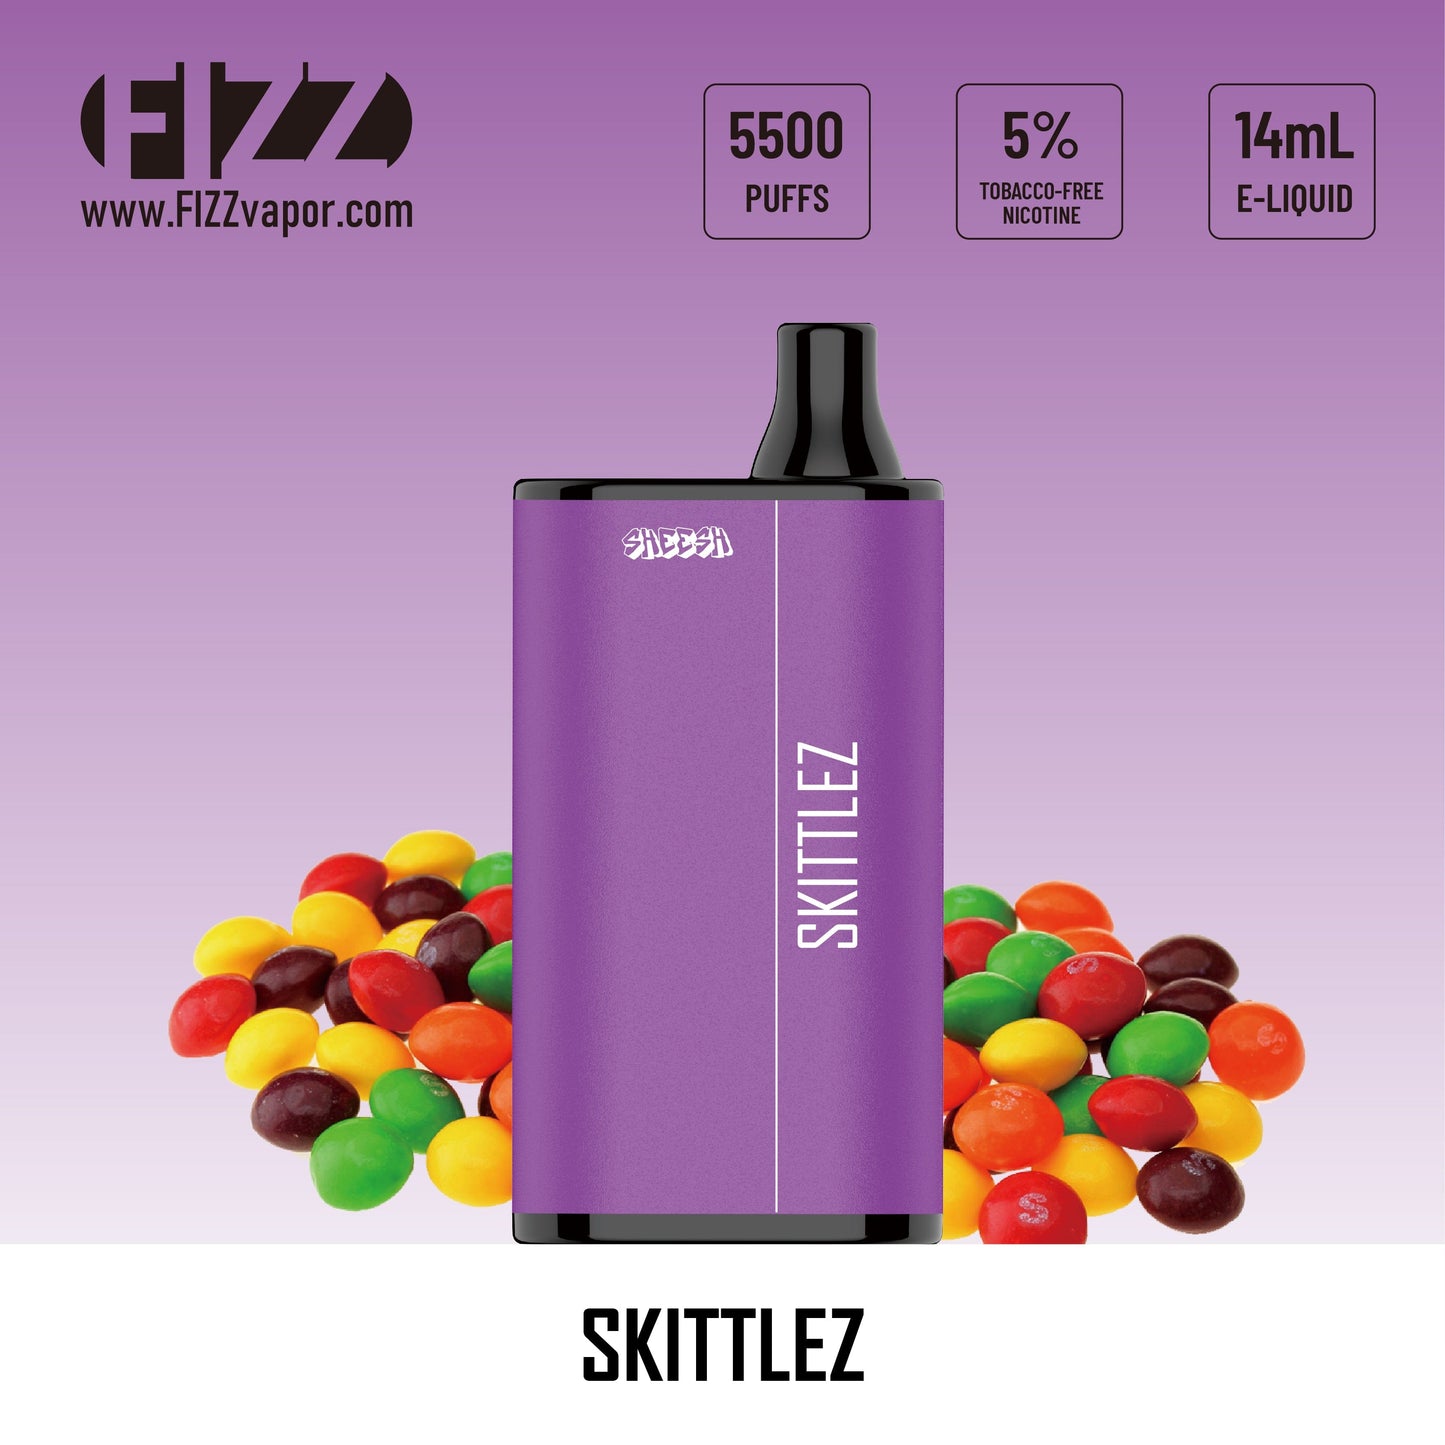 Sheesh - Skittlez